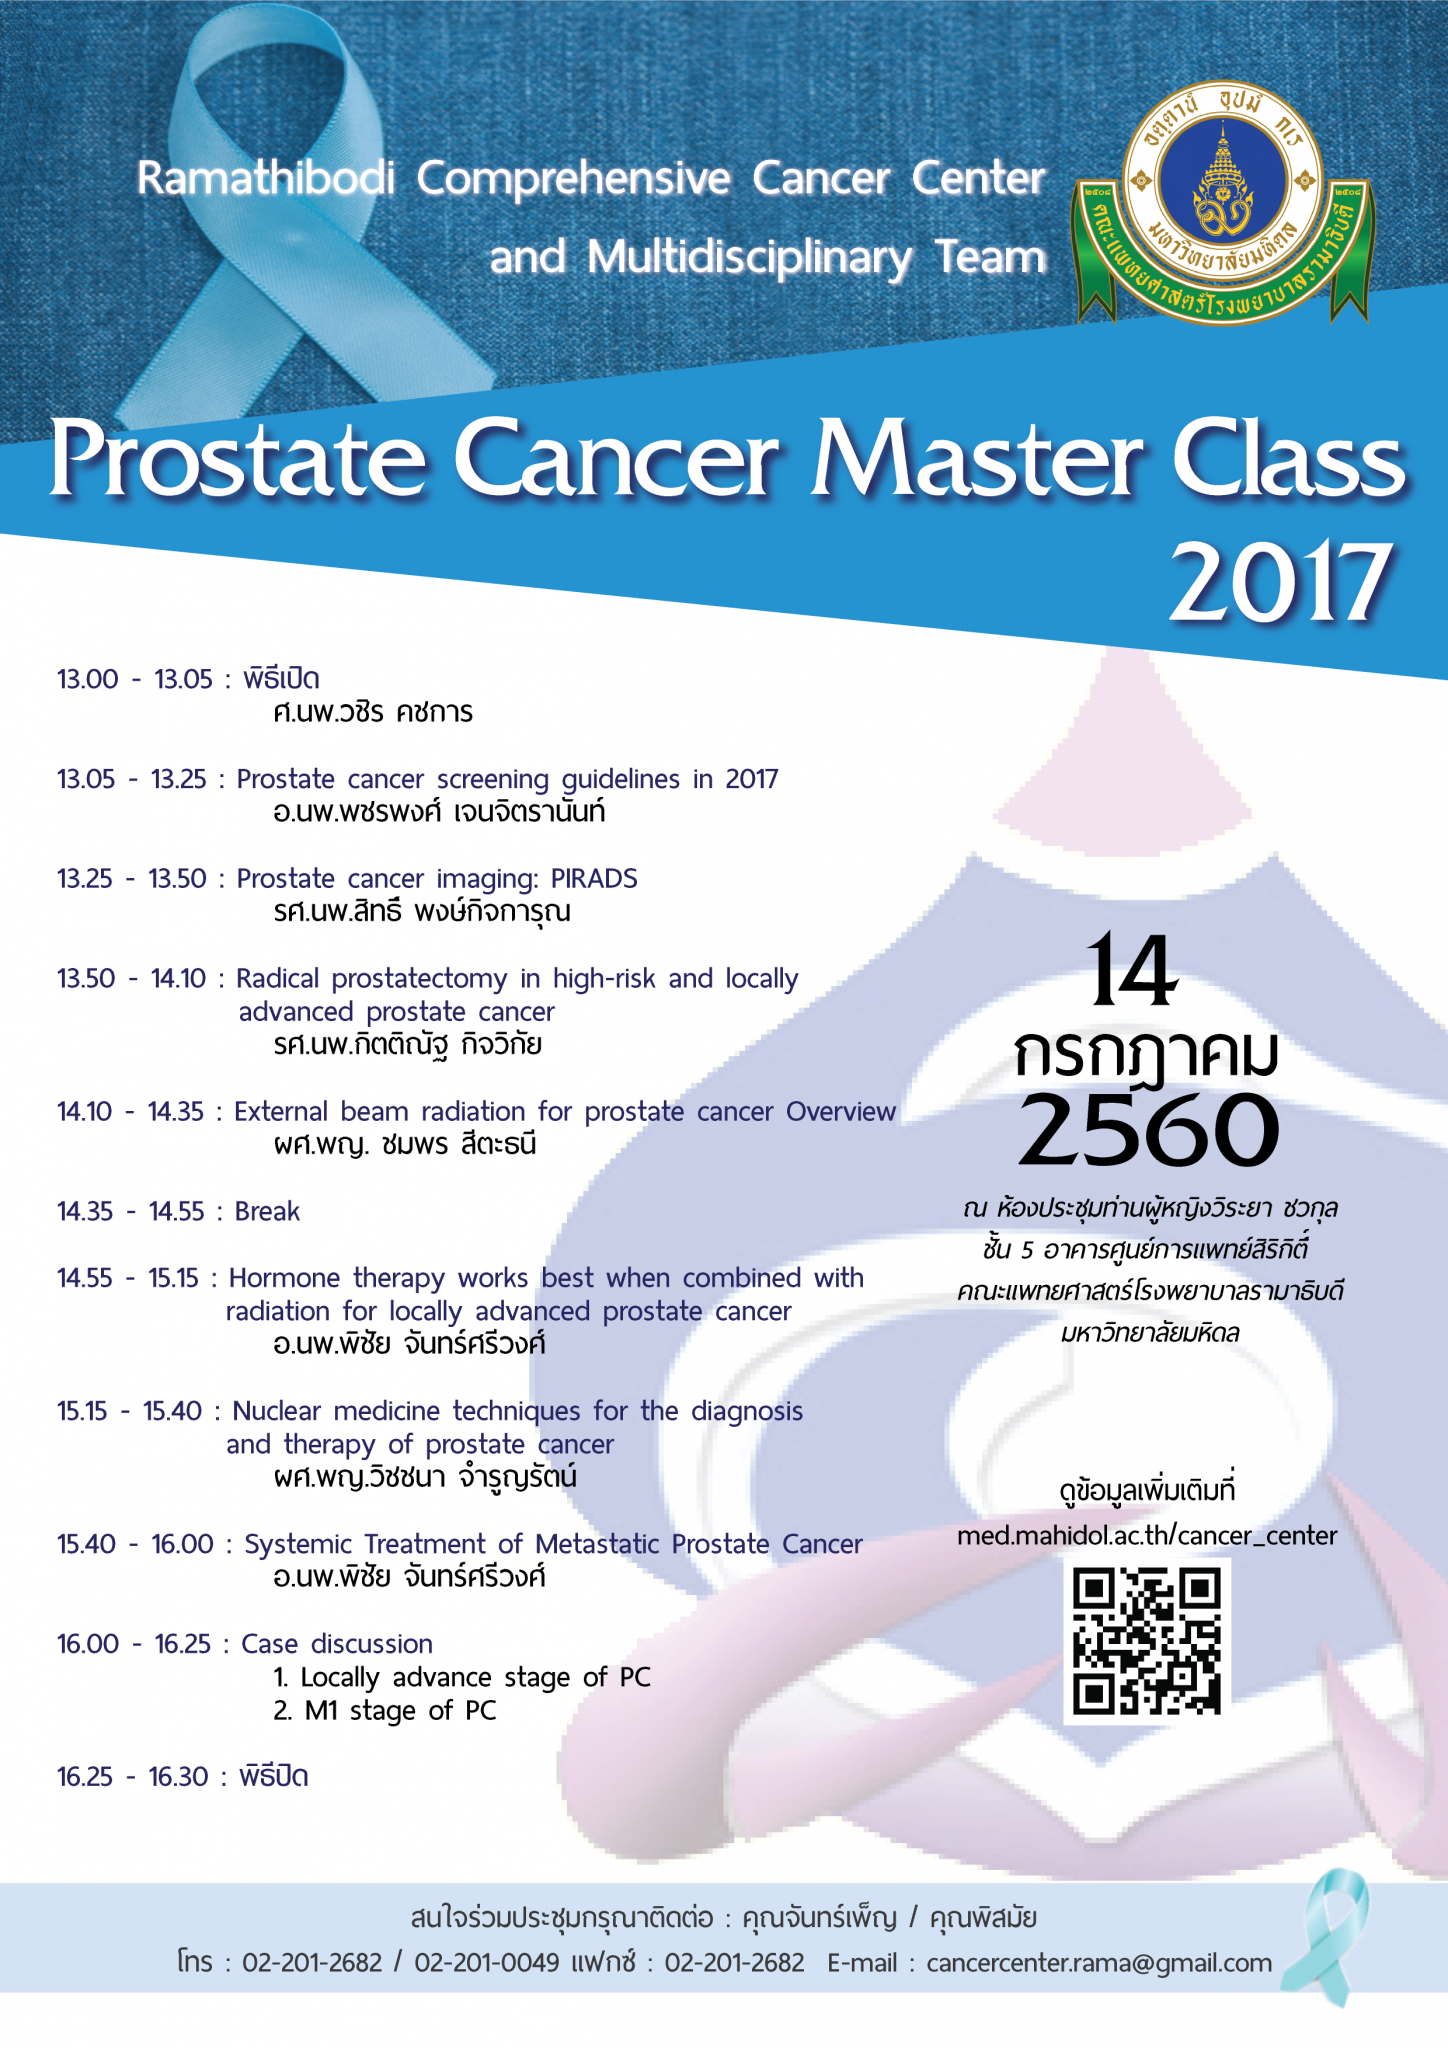 งานประชุมวิชาการ Prostate Cancer Master Class 2017